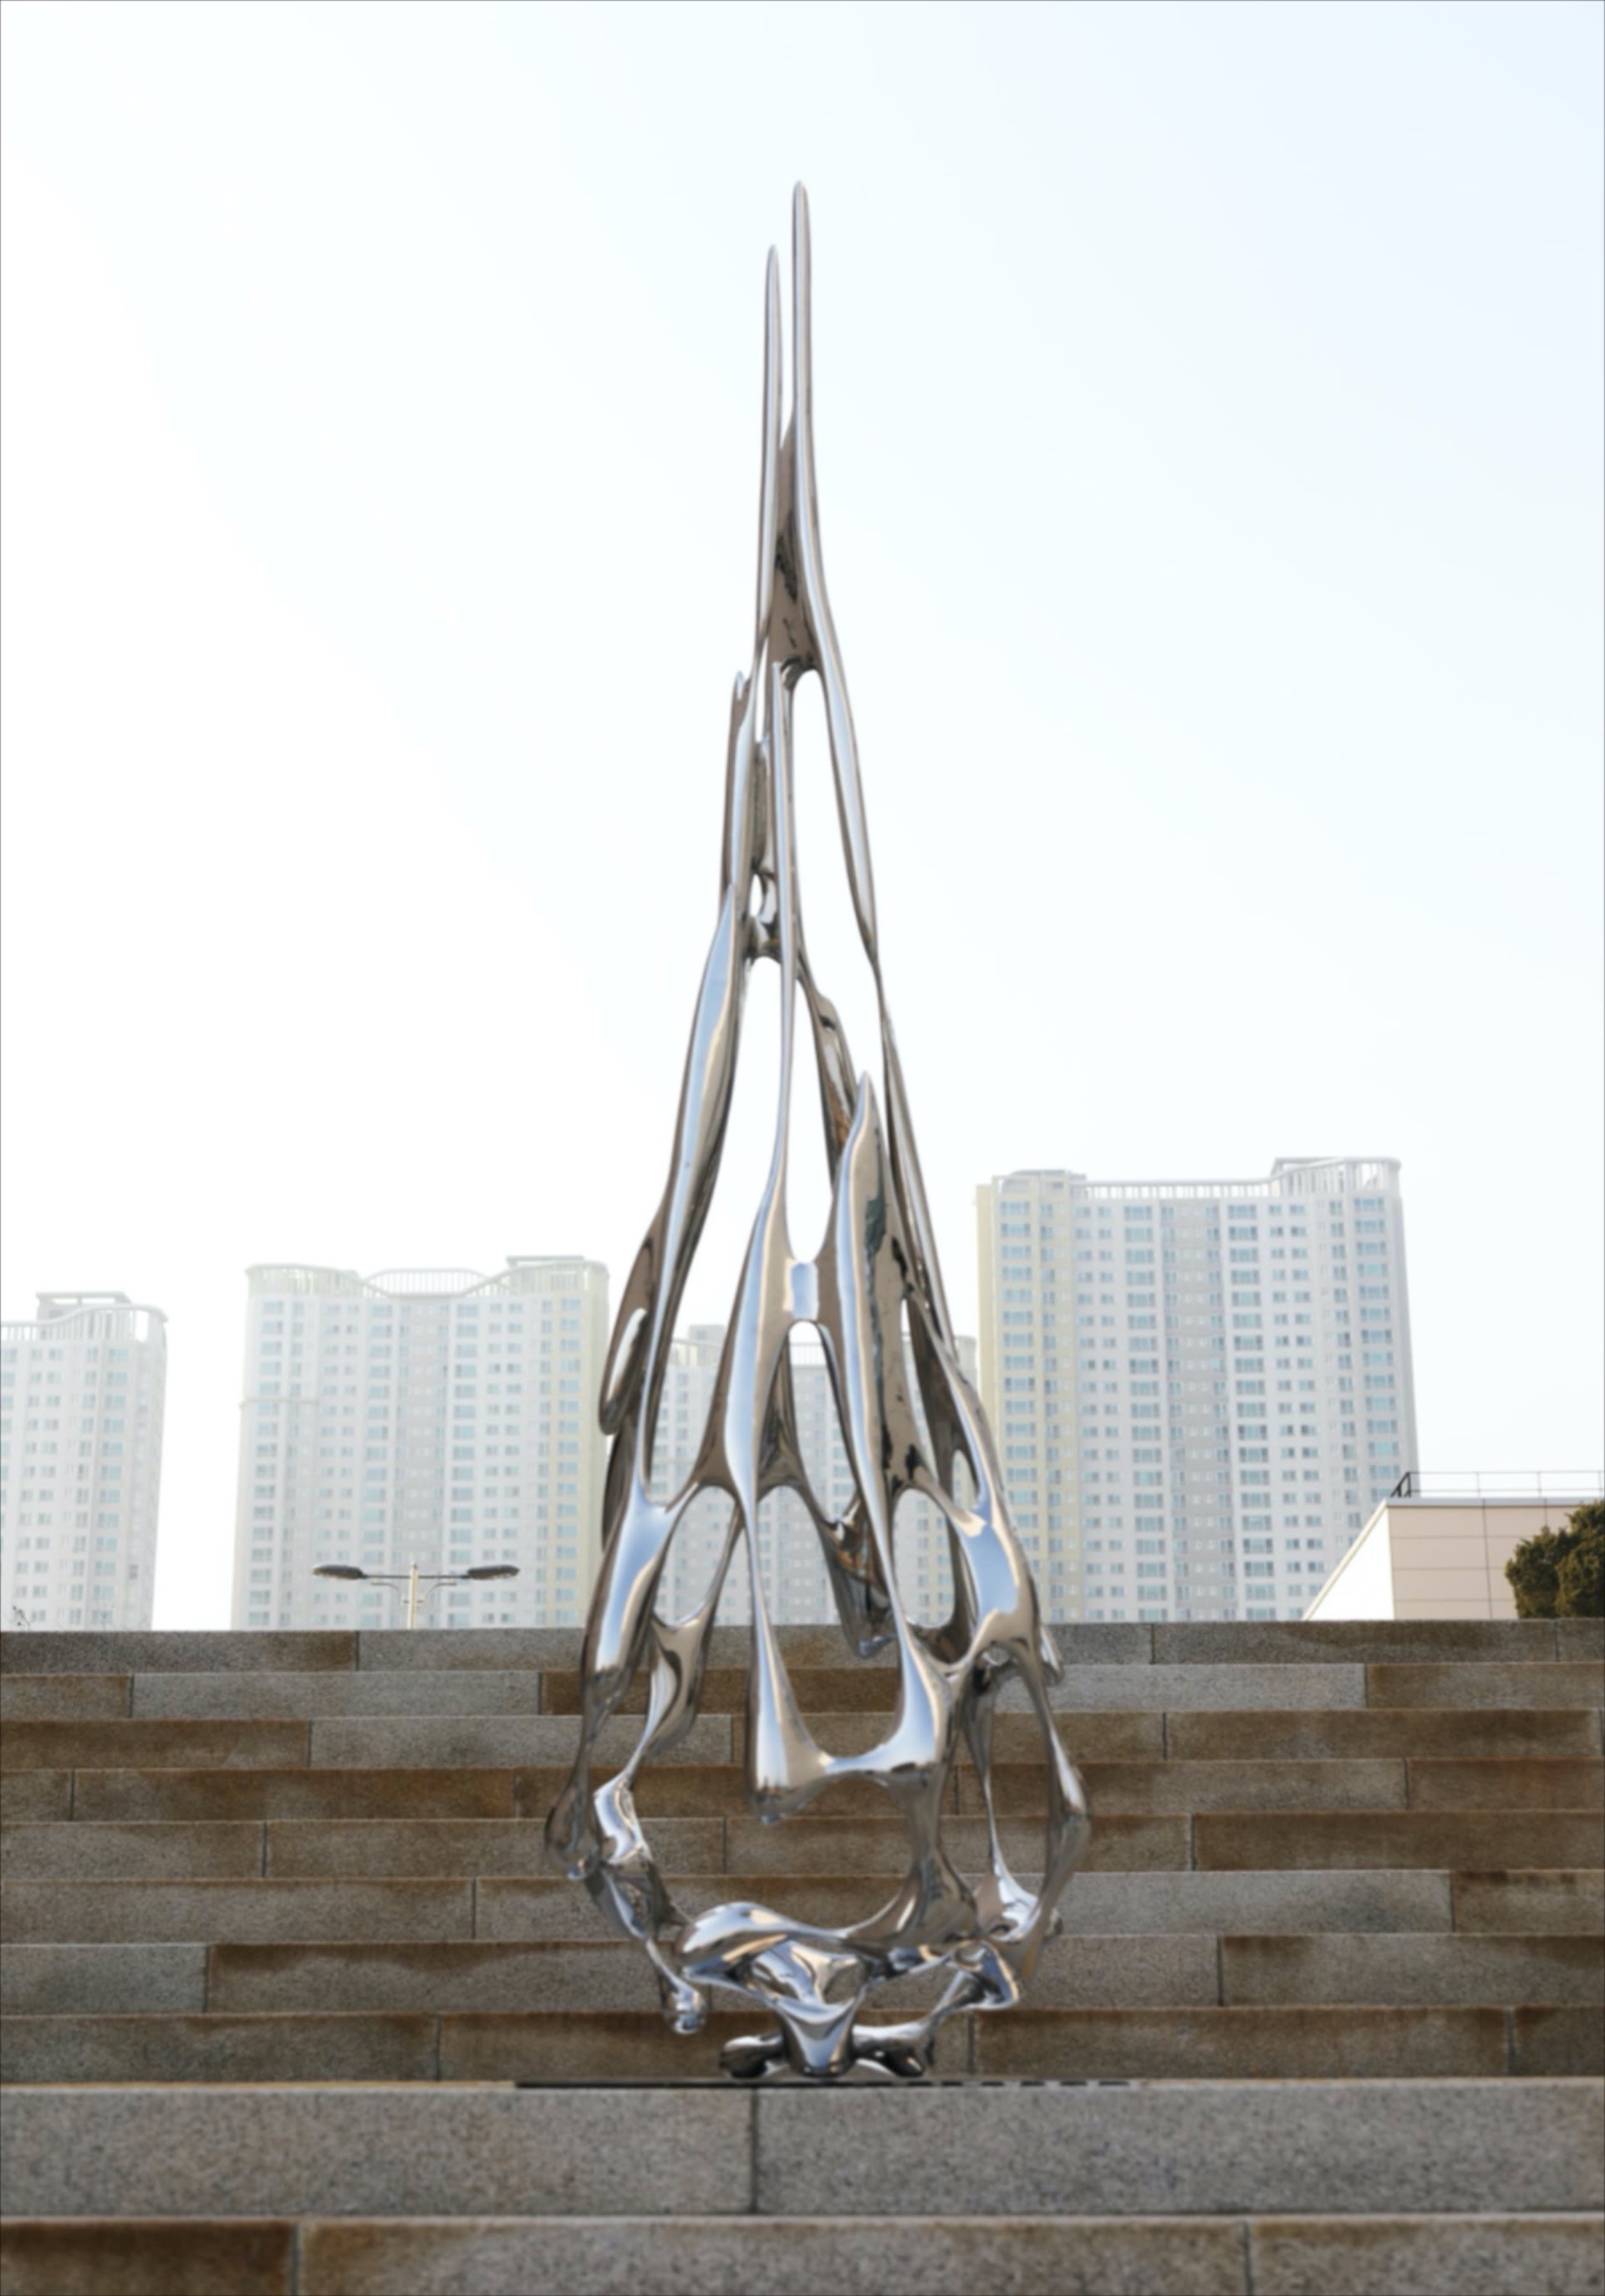 Kim SeungHwan, Organism, 2021, acciaio, 82x25x77 cm